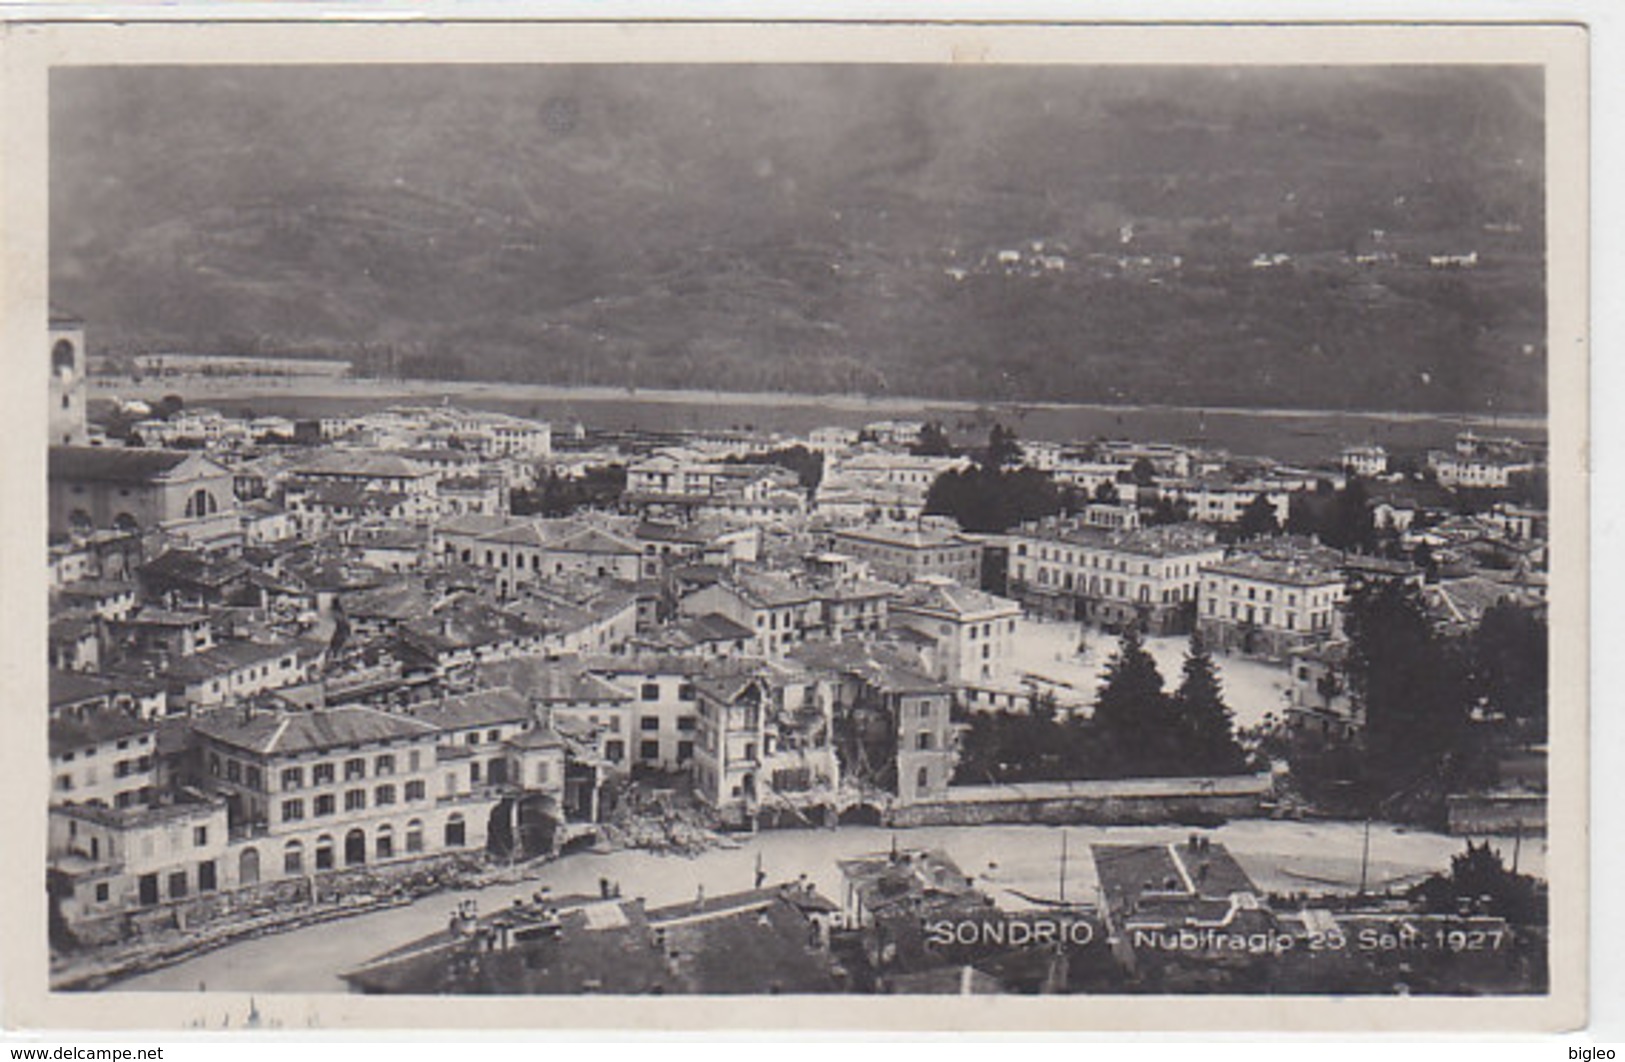 Sondrio - Nubifragio 25 Sett. 1927 - Cartolina Photo     (A-21-100617) - Sondrio